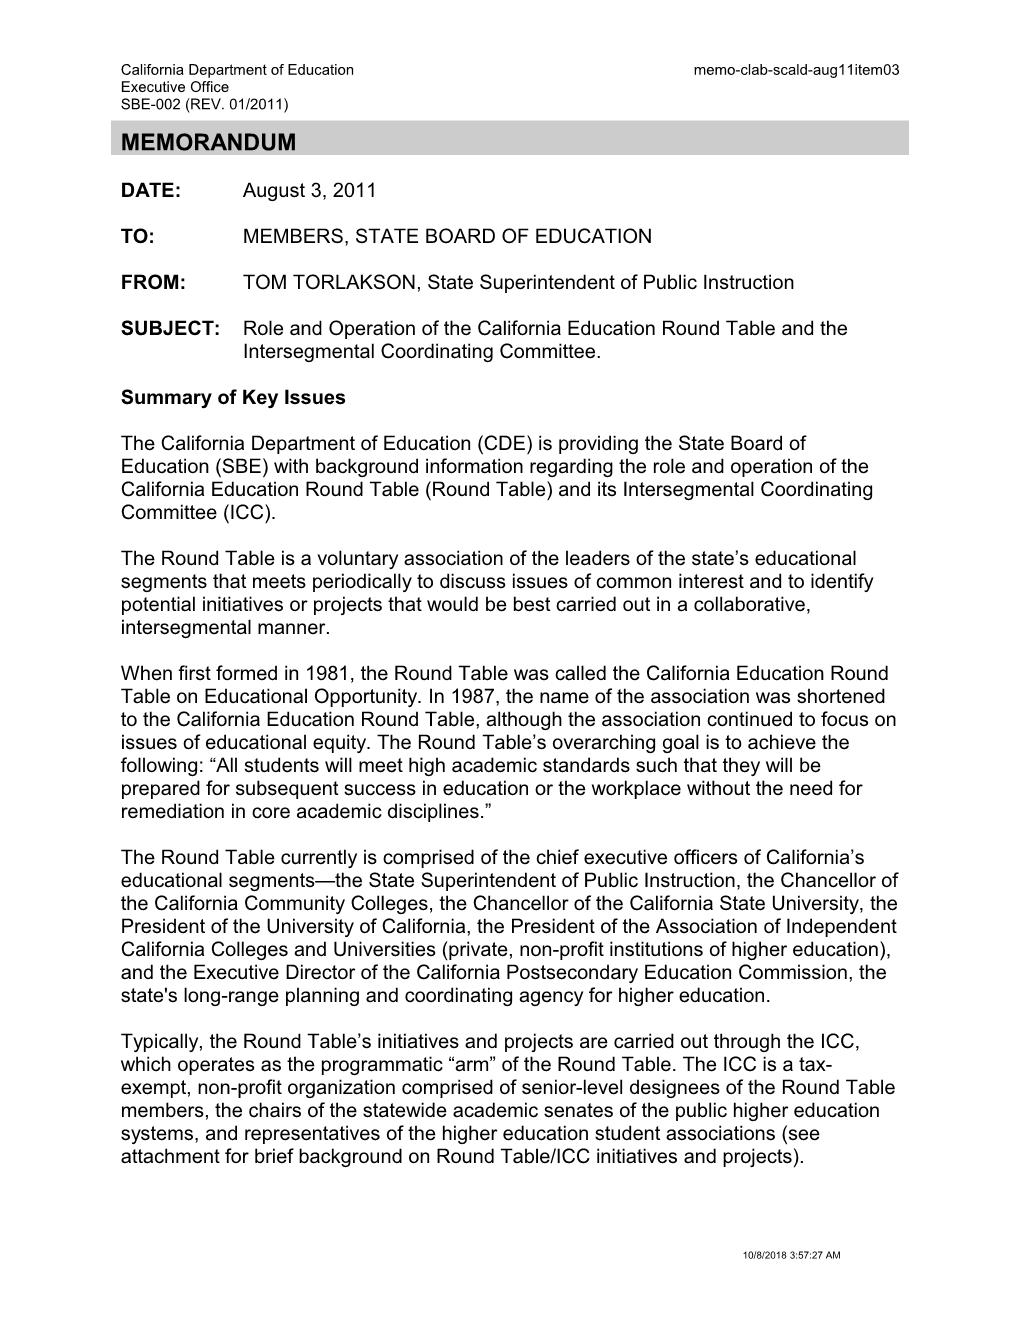 August 2011 Memorandum SCALD Item 3 - Information Memorandum (CA State Board of Education)